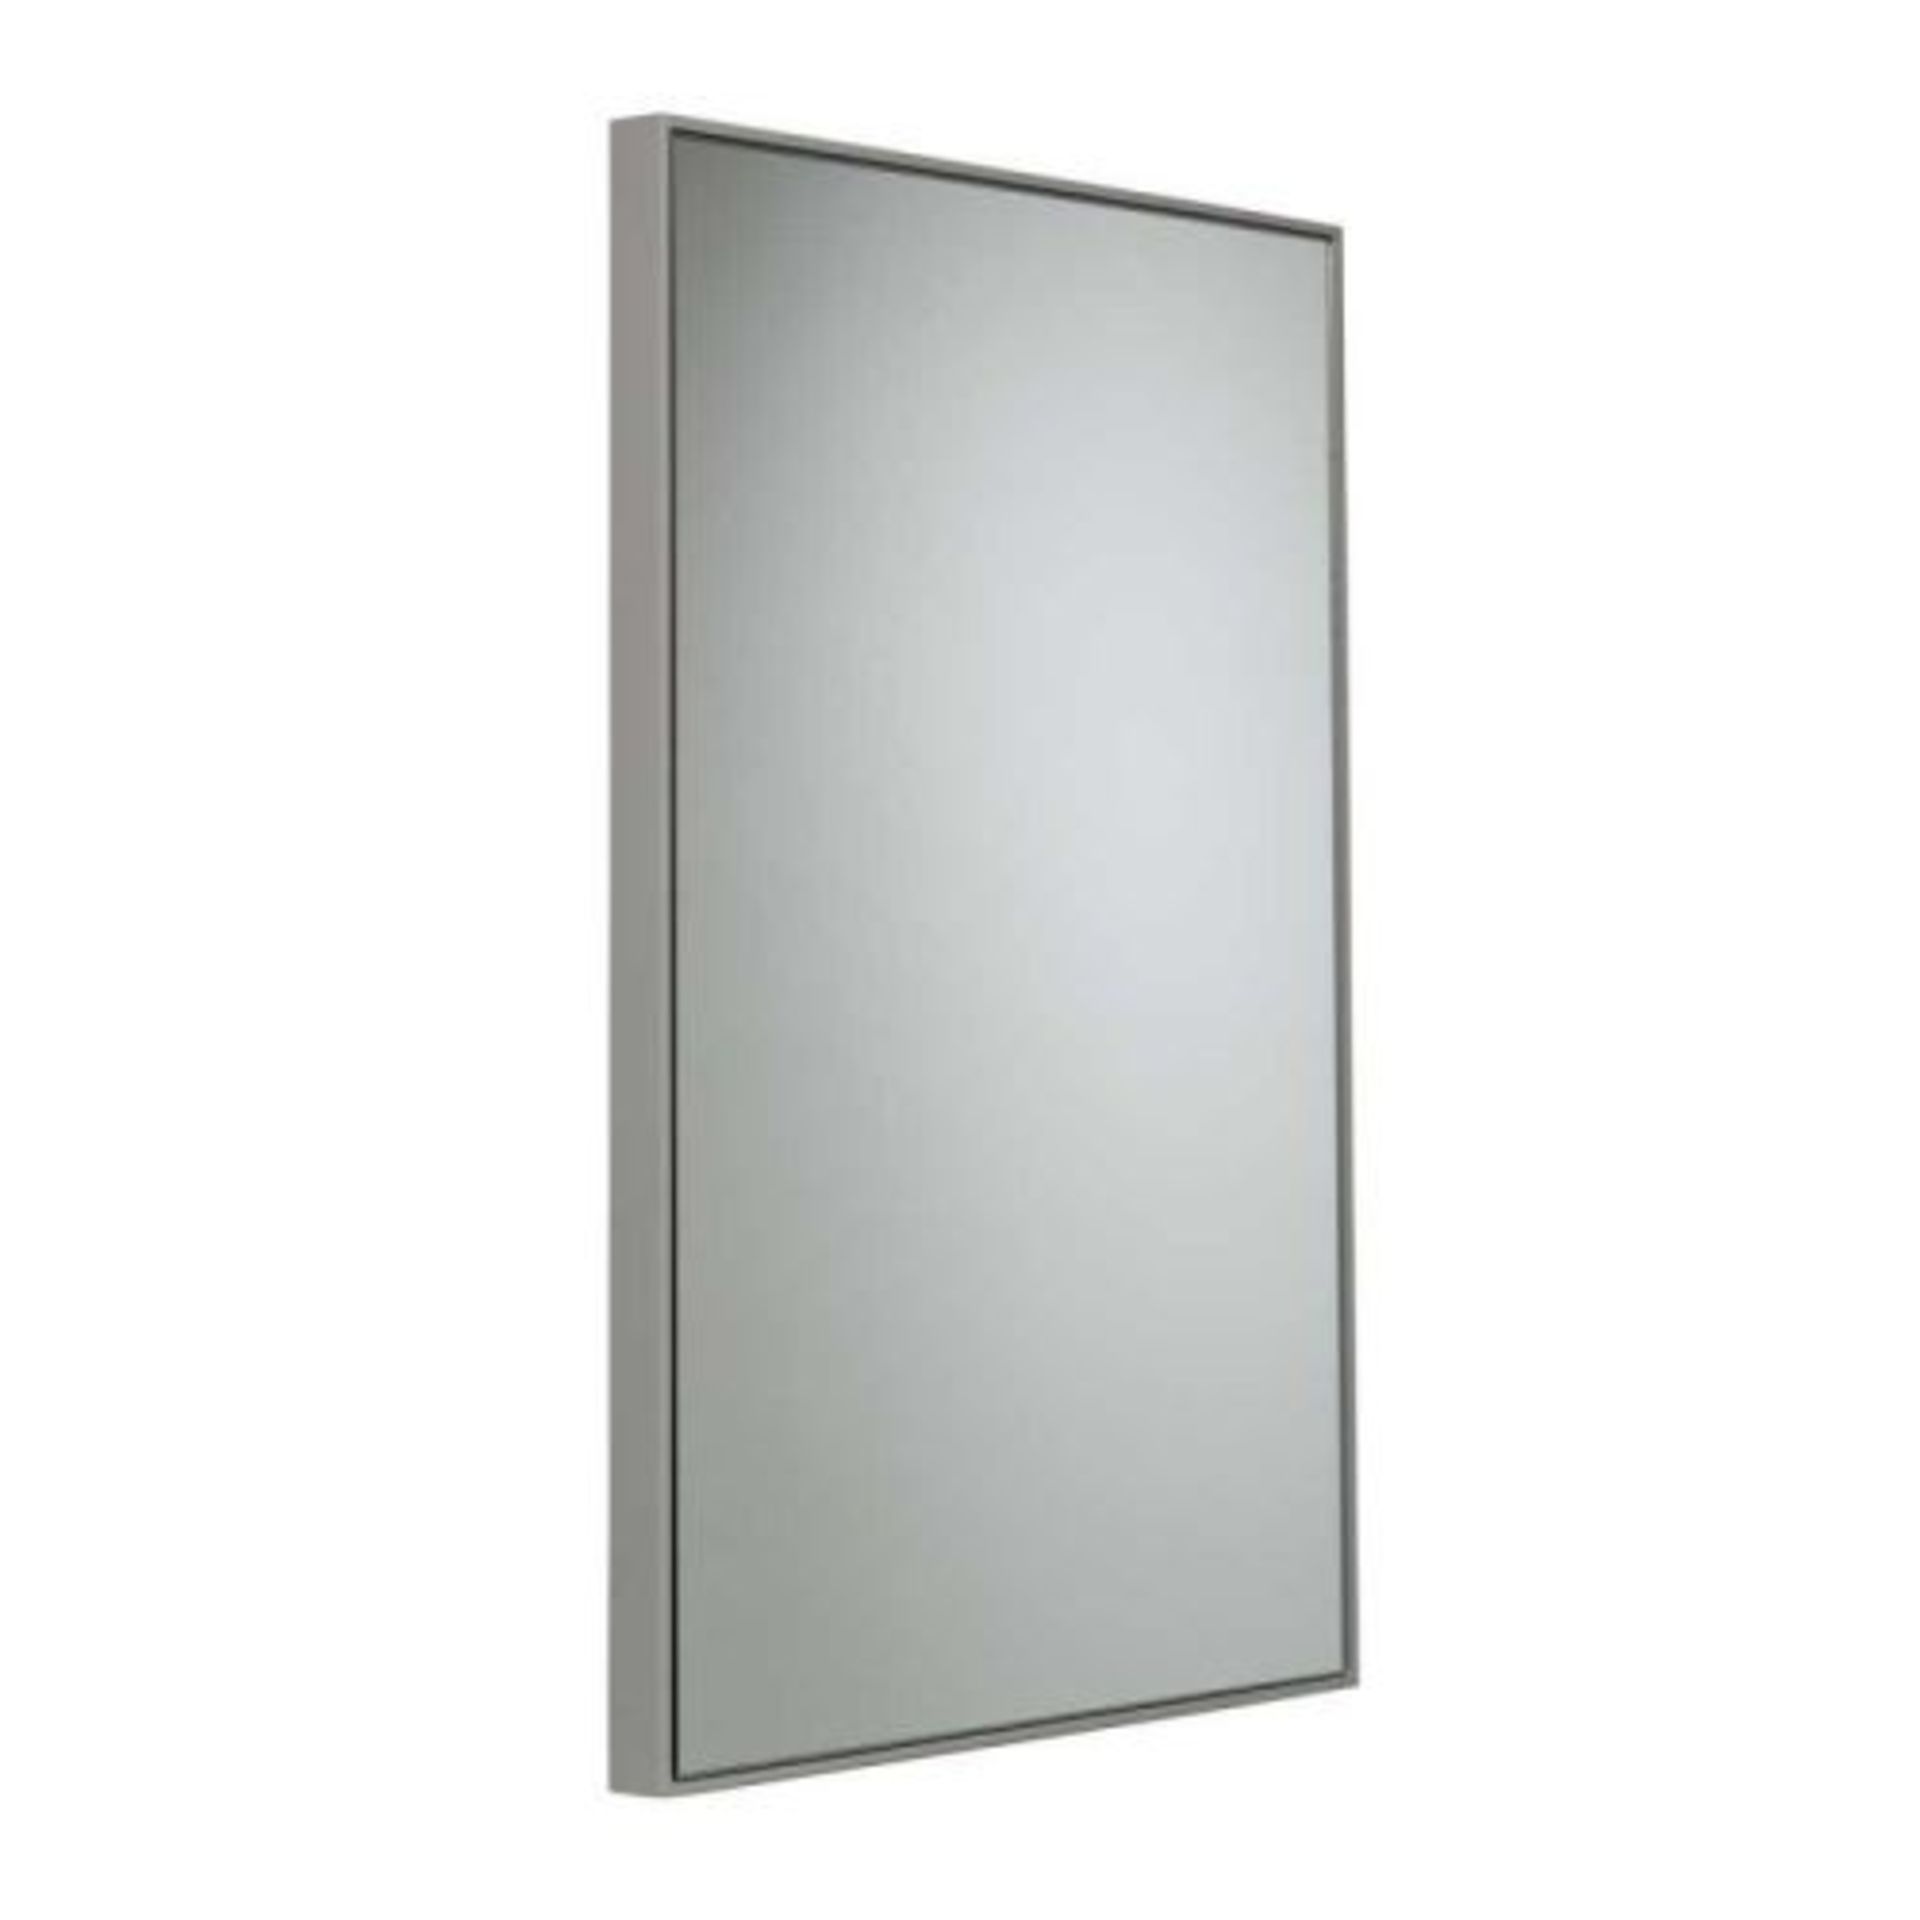 R2 Bathrooms Modular AM5050.LG Framed Mirror - Light Grey